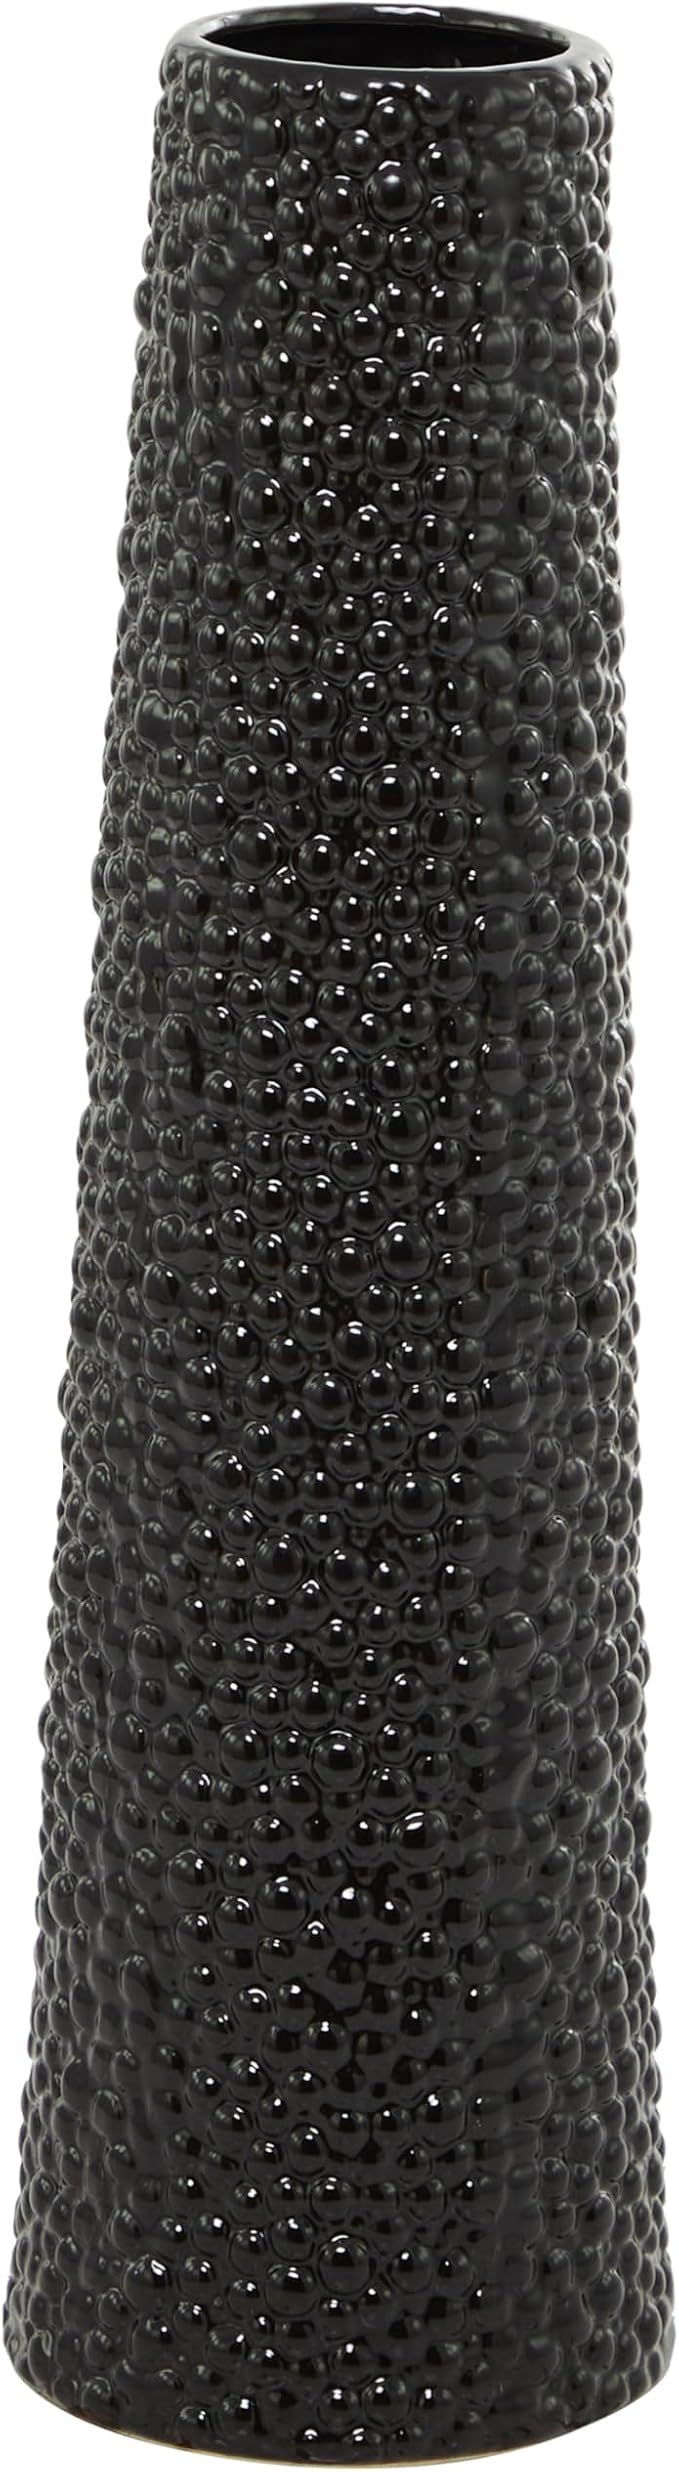 Deco 79 Ceramic Vase with Bubble Texture, 7" x 7" x 25", Black | Amazon (US)